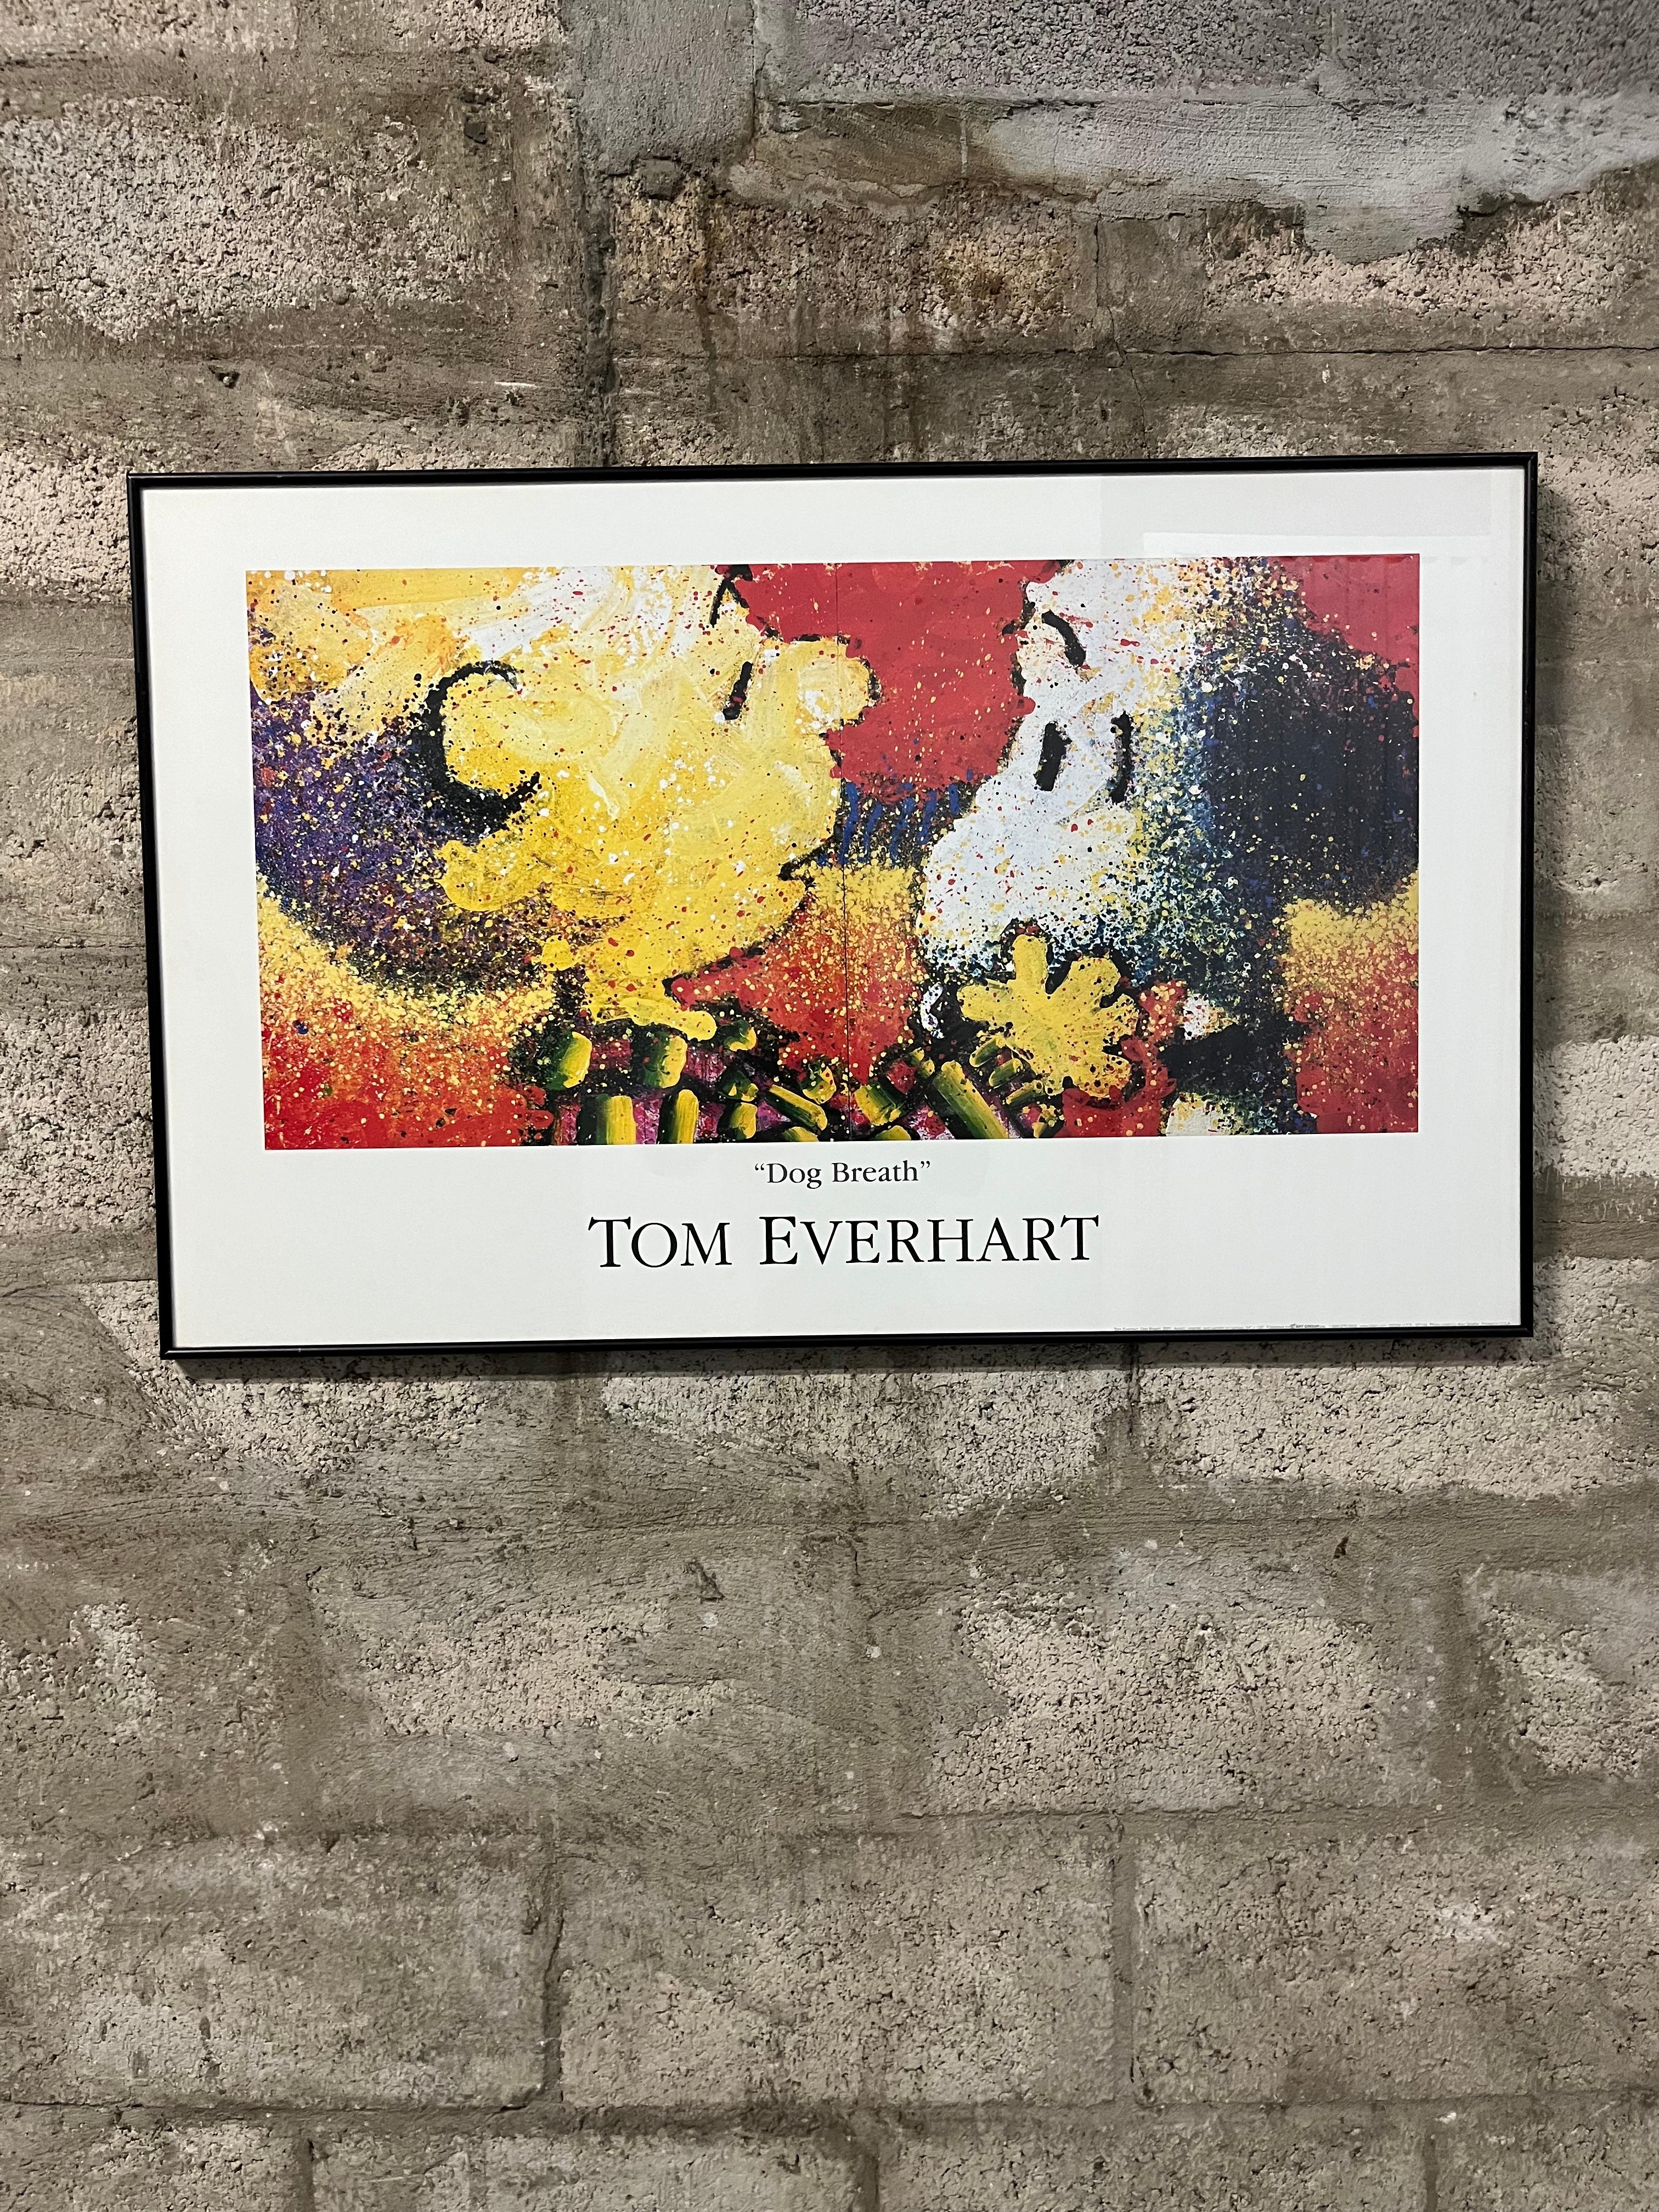 Early 21st Century Dog Breath von Tom Everhaet Custom Frame Poster veröffentlicht von der S 2 Art Group. Jahr 2002
Das verpixelte Bild von Charlie Brown und Snoopy, die sich gegenseitig anstarren, ist mit einem schwarzen Rahmen aus gebürstetem